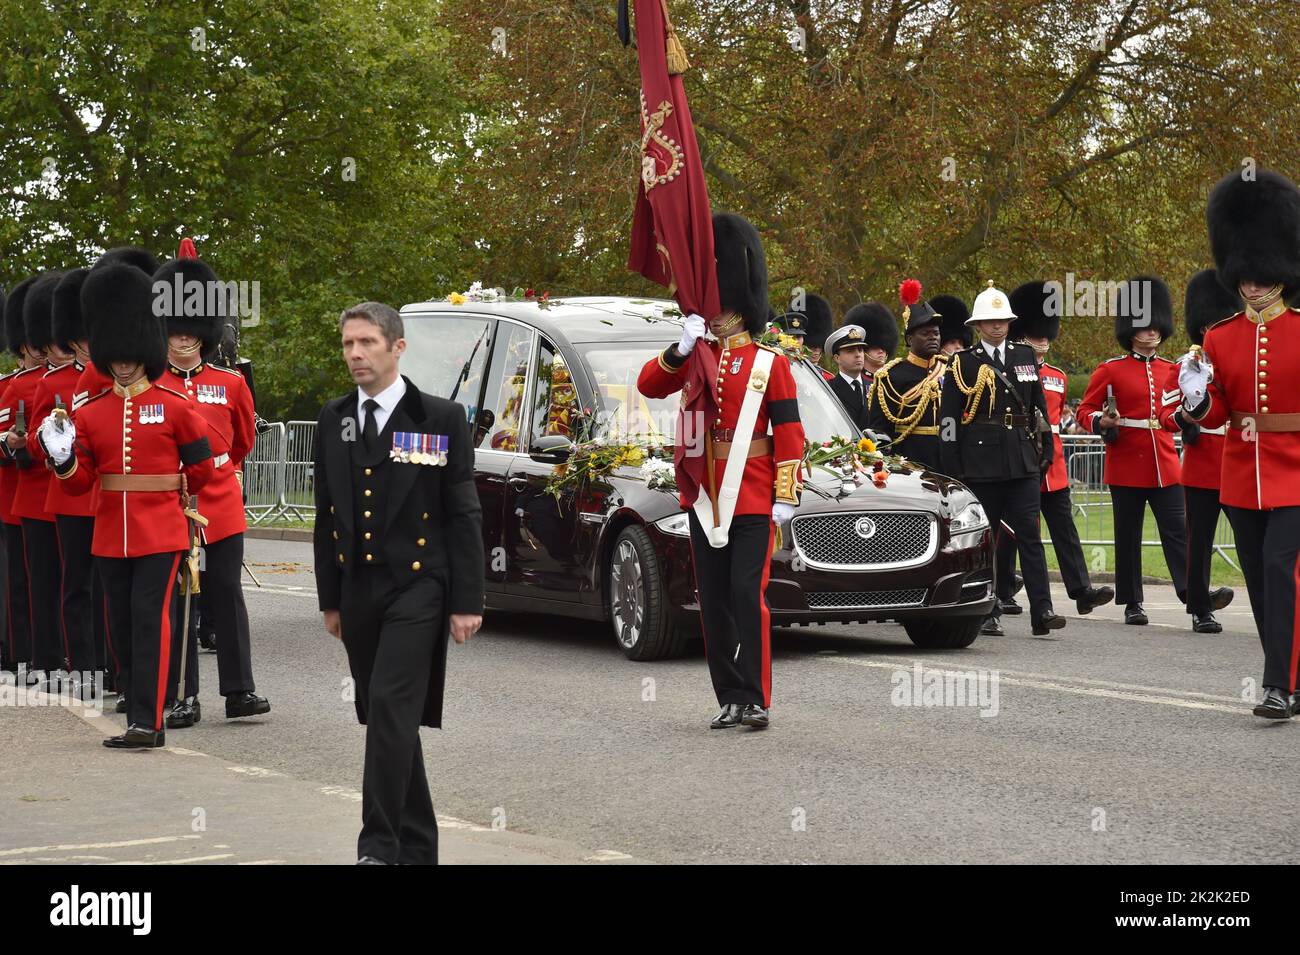 Funeral of Queen Elizabeth II Windsor Monday 19th September 2022 Stock Photo